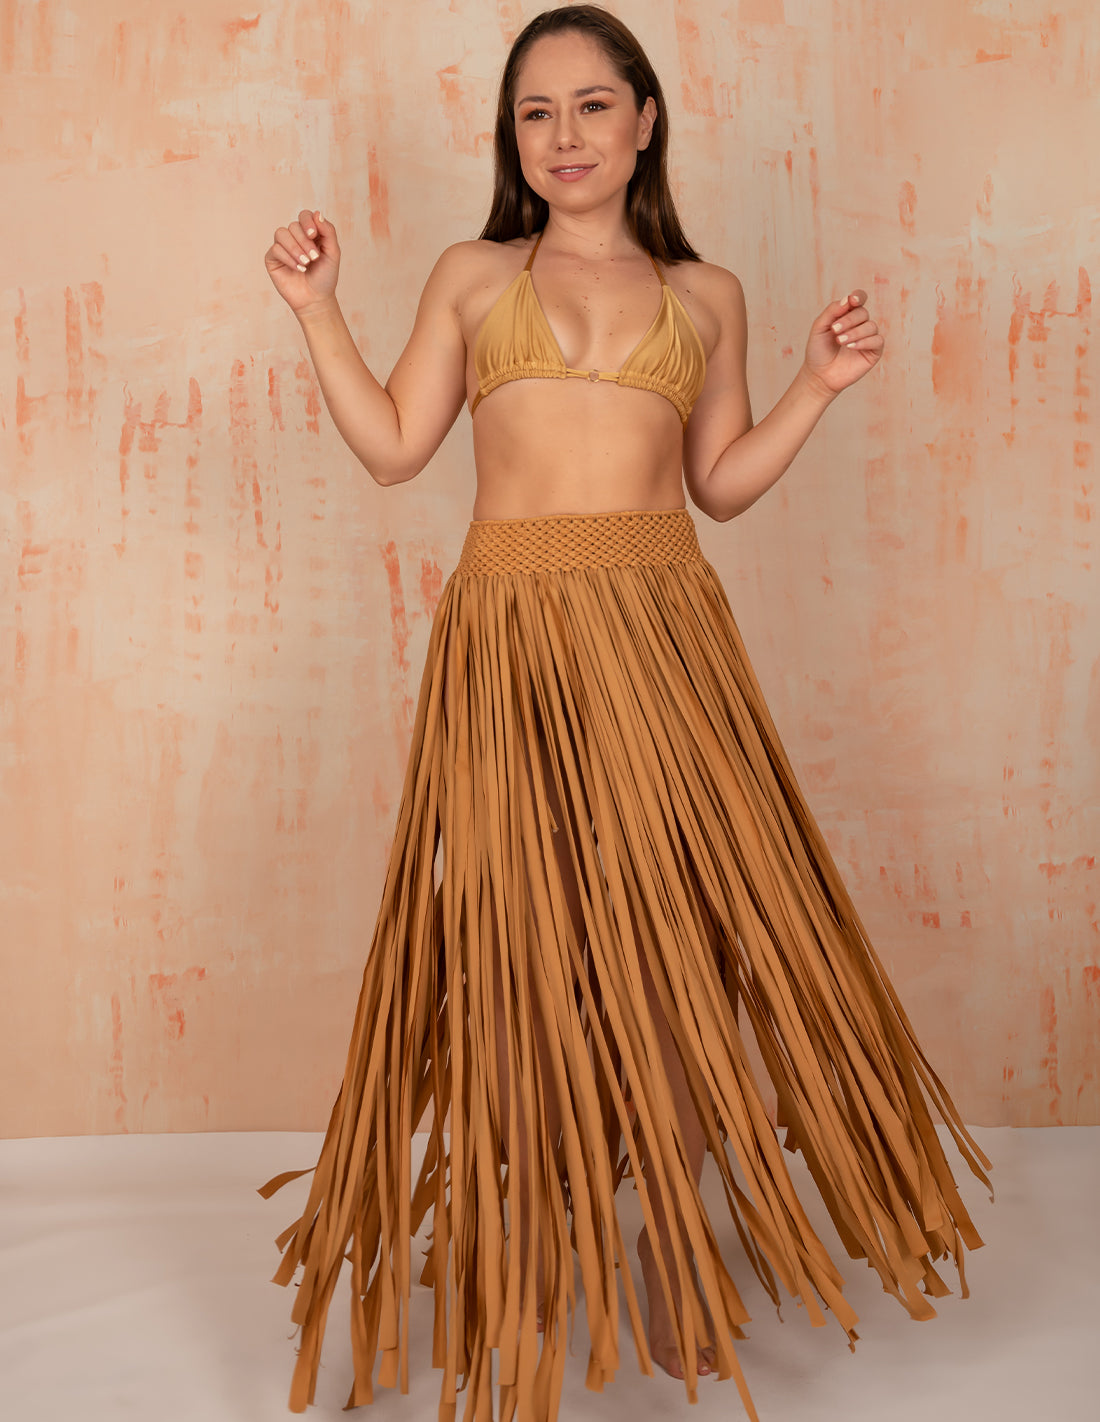 Flow Skirt Golden. Hand-Dyed Beach Skirt With Hand Woven Macramé In Golden. Entreaguas